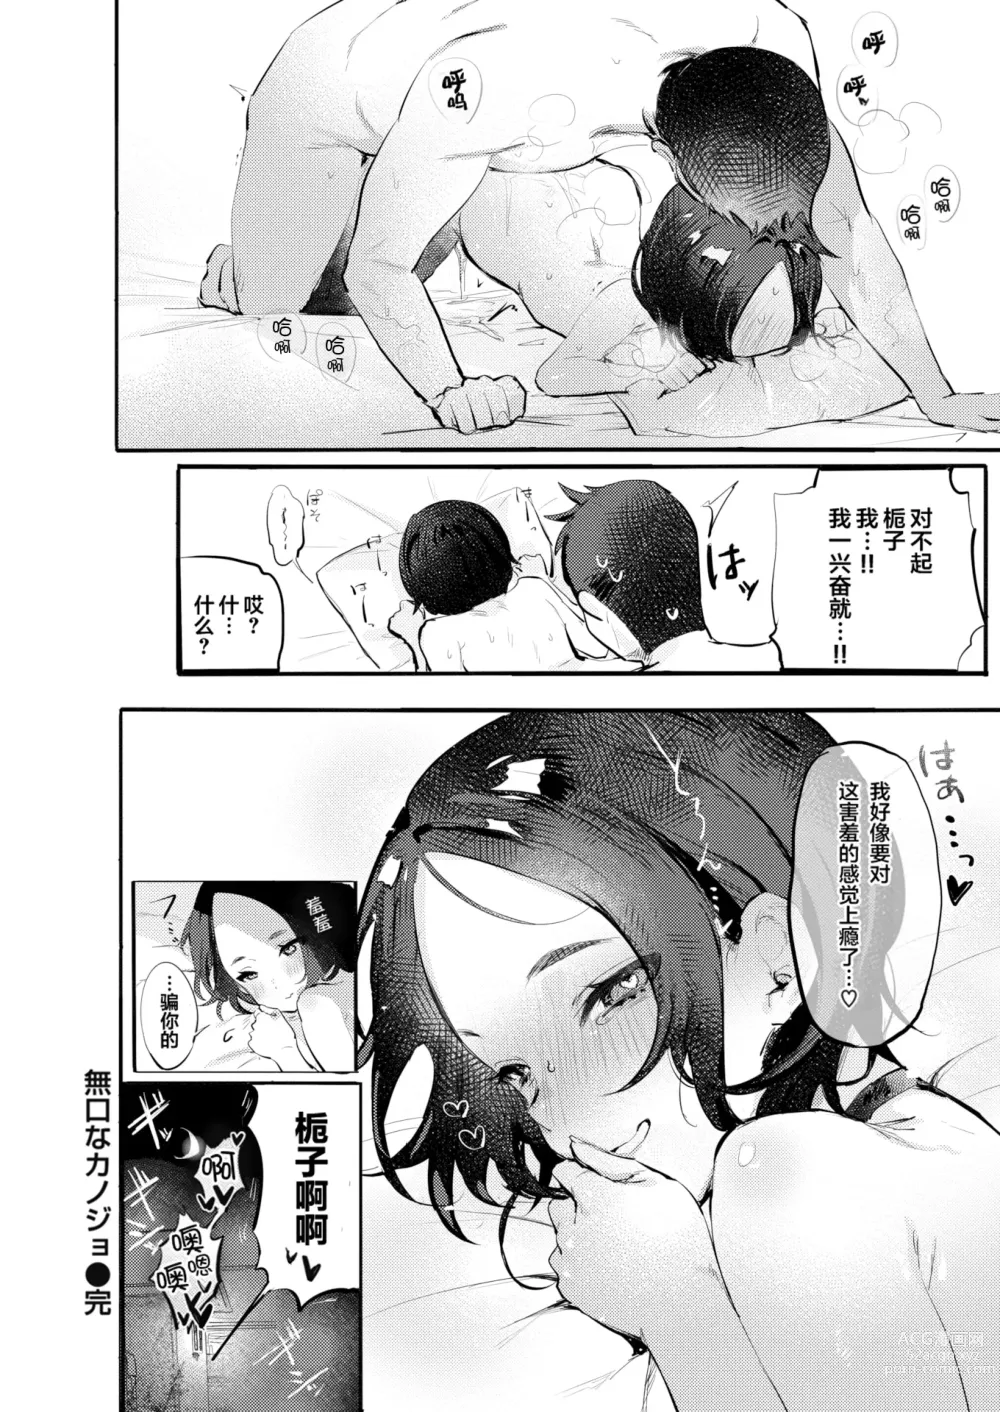 Page 162 of manga Nikushoku Short Cake